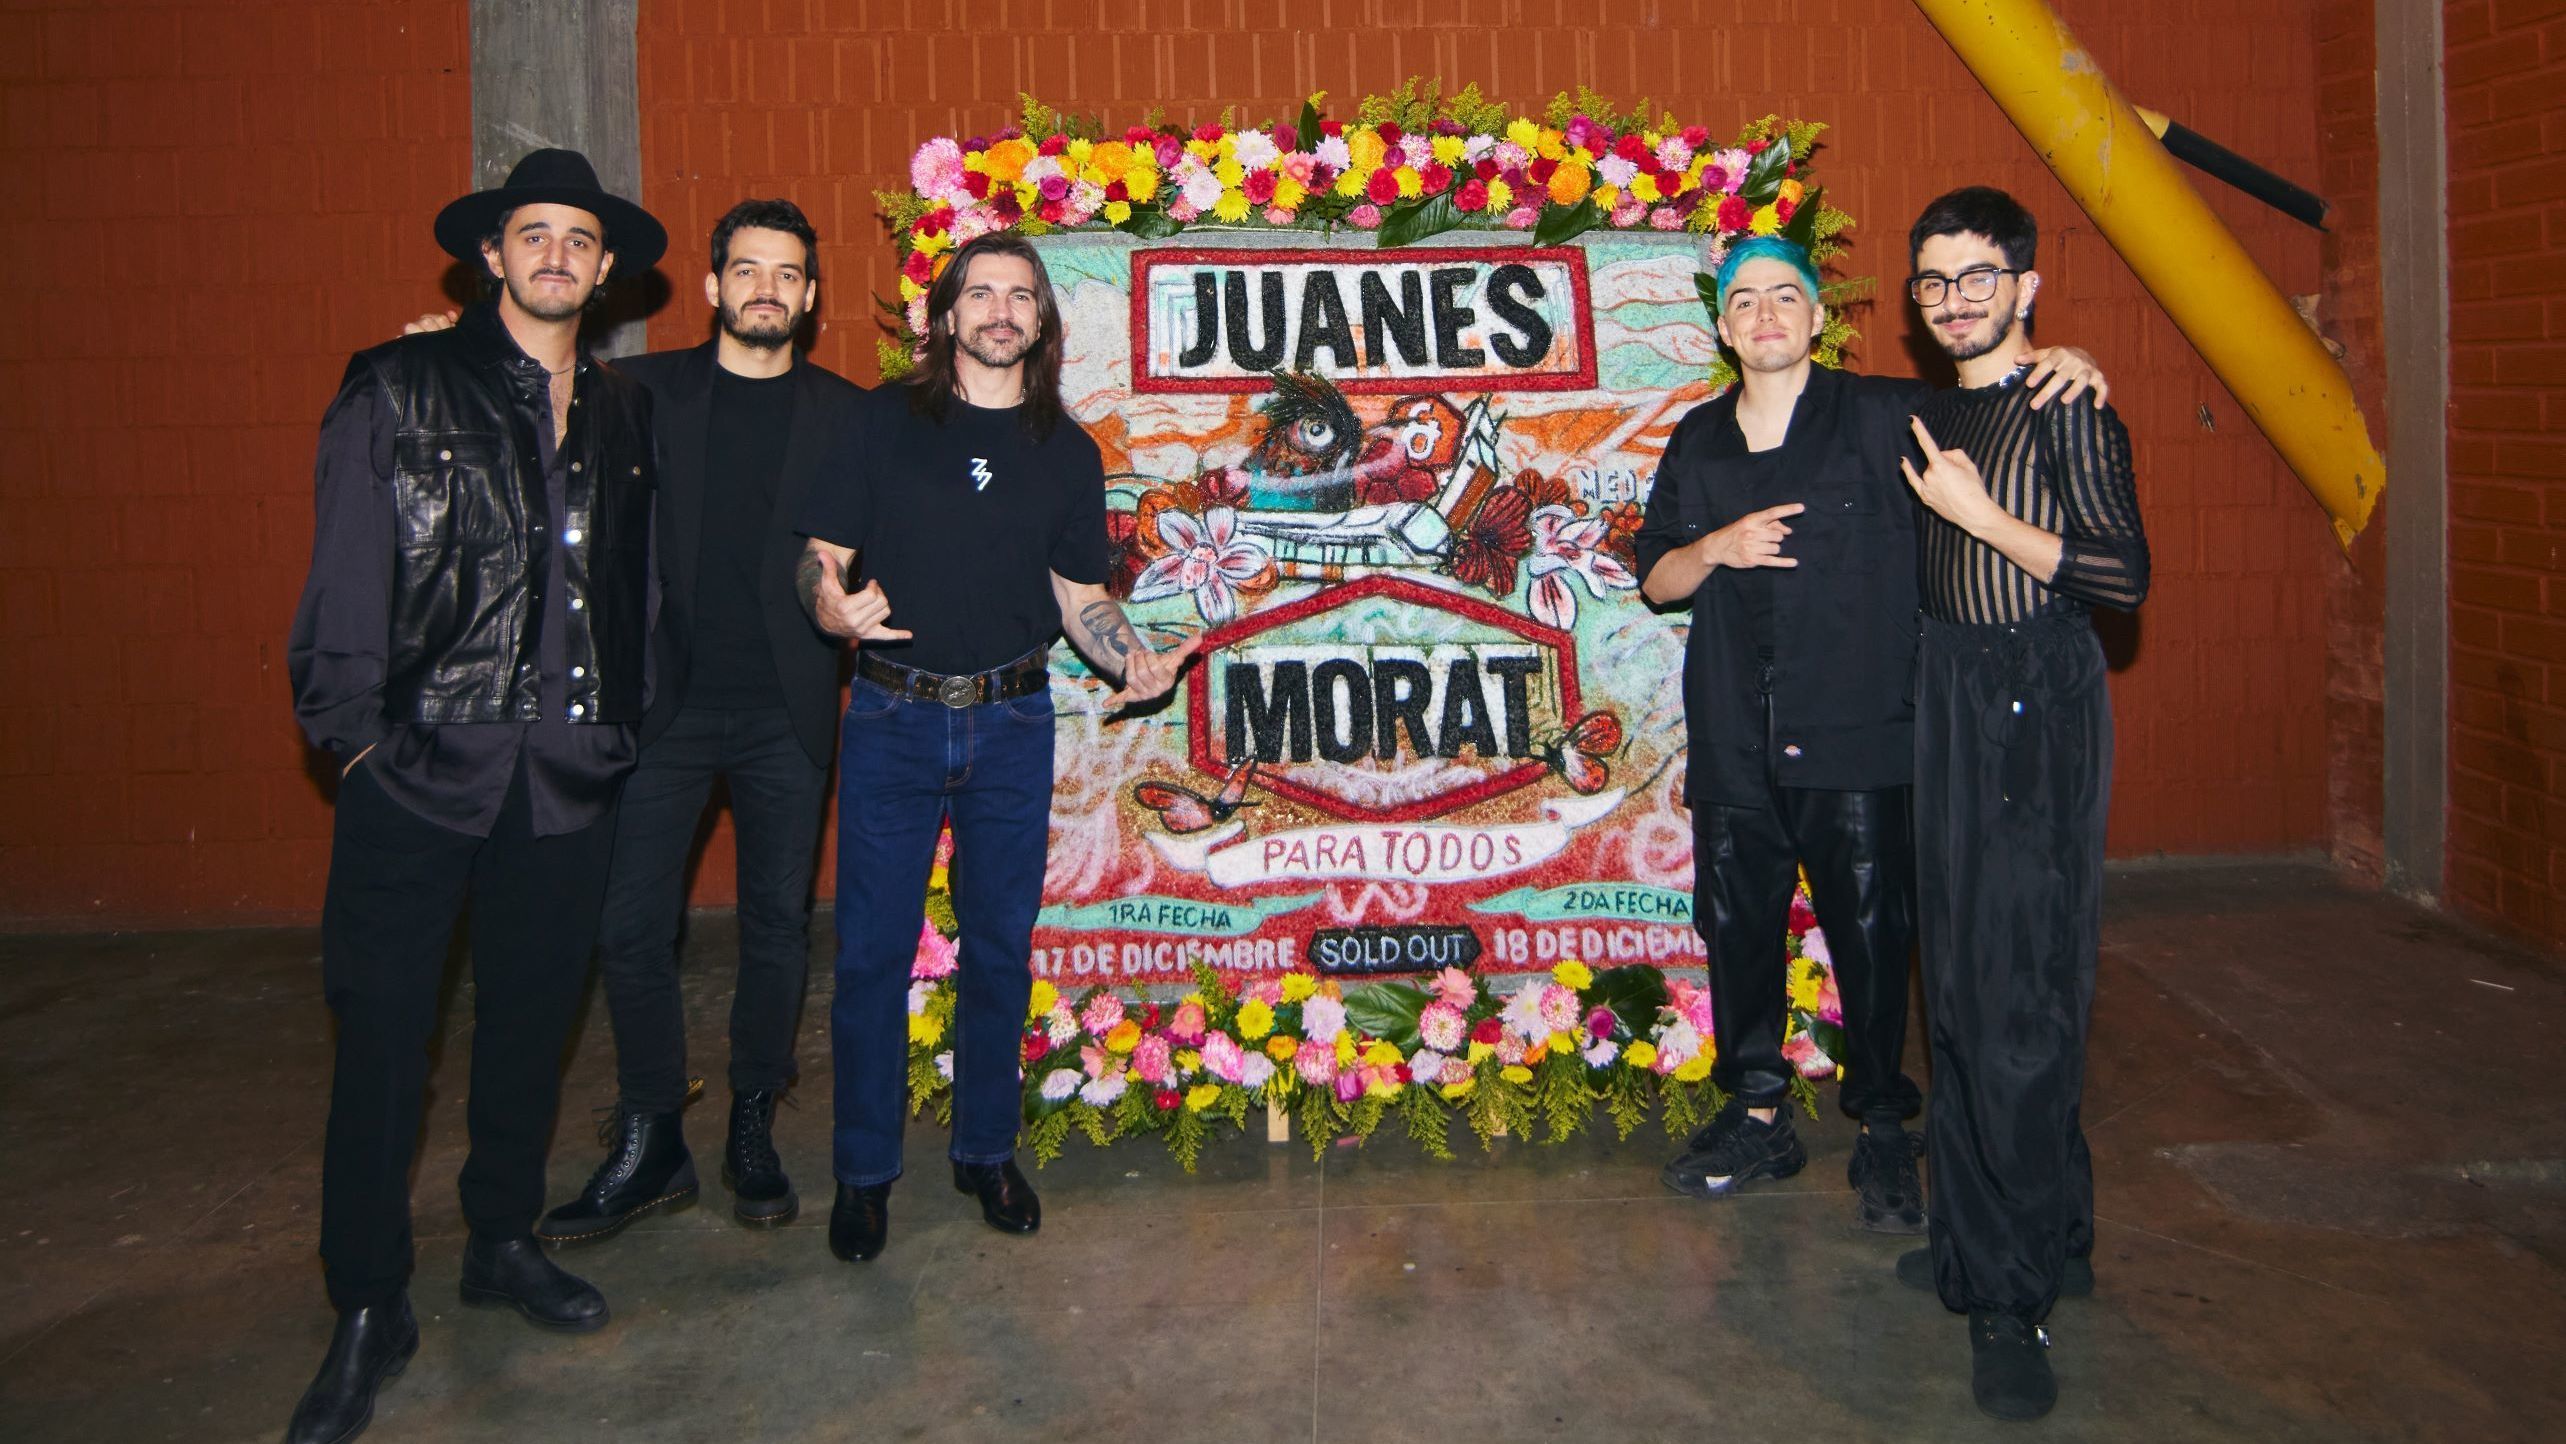 Juanes y Morat arrasan en sus conciertos en Medellín